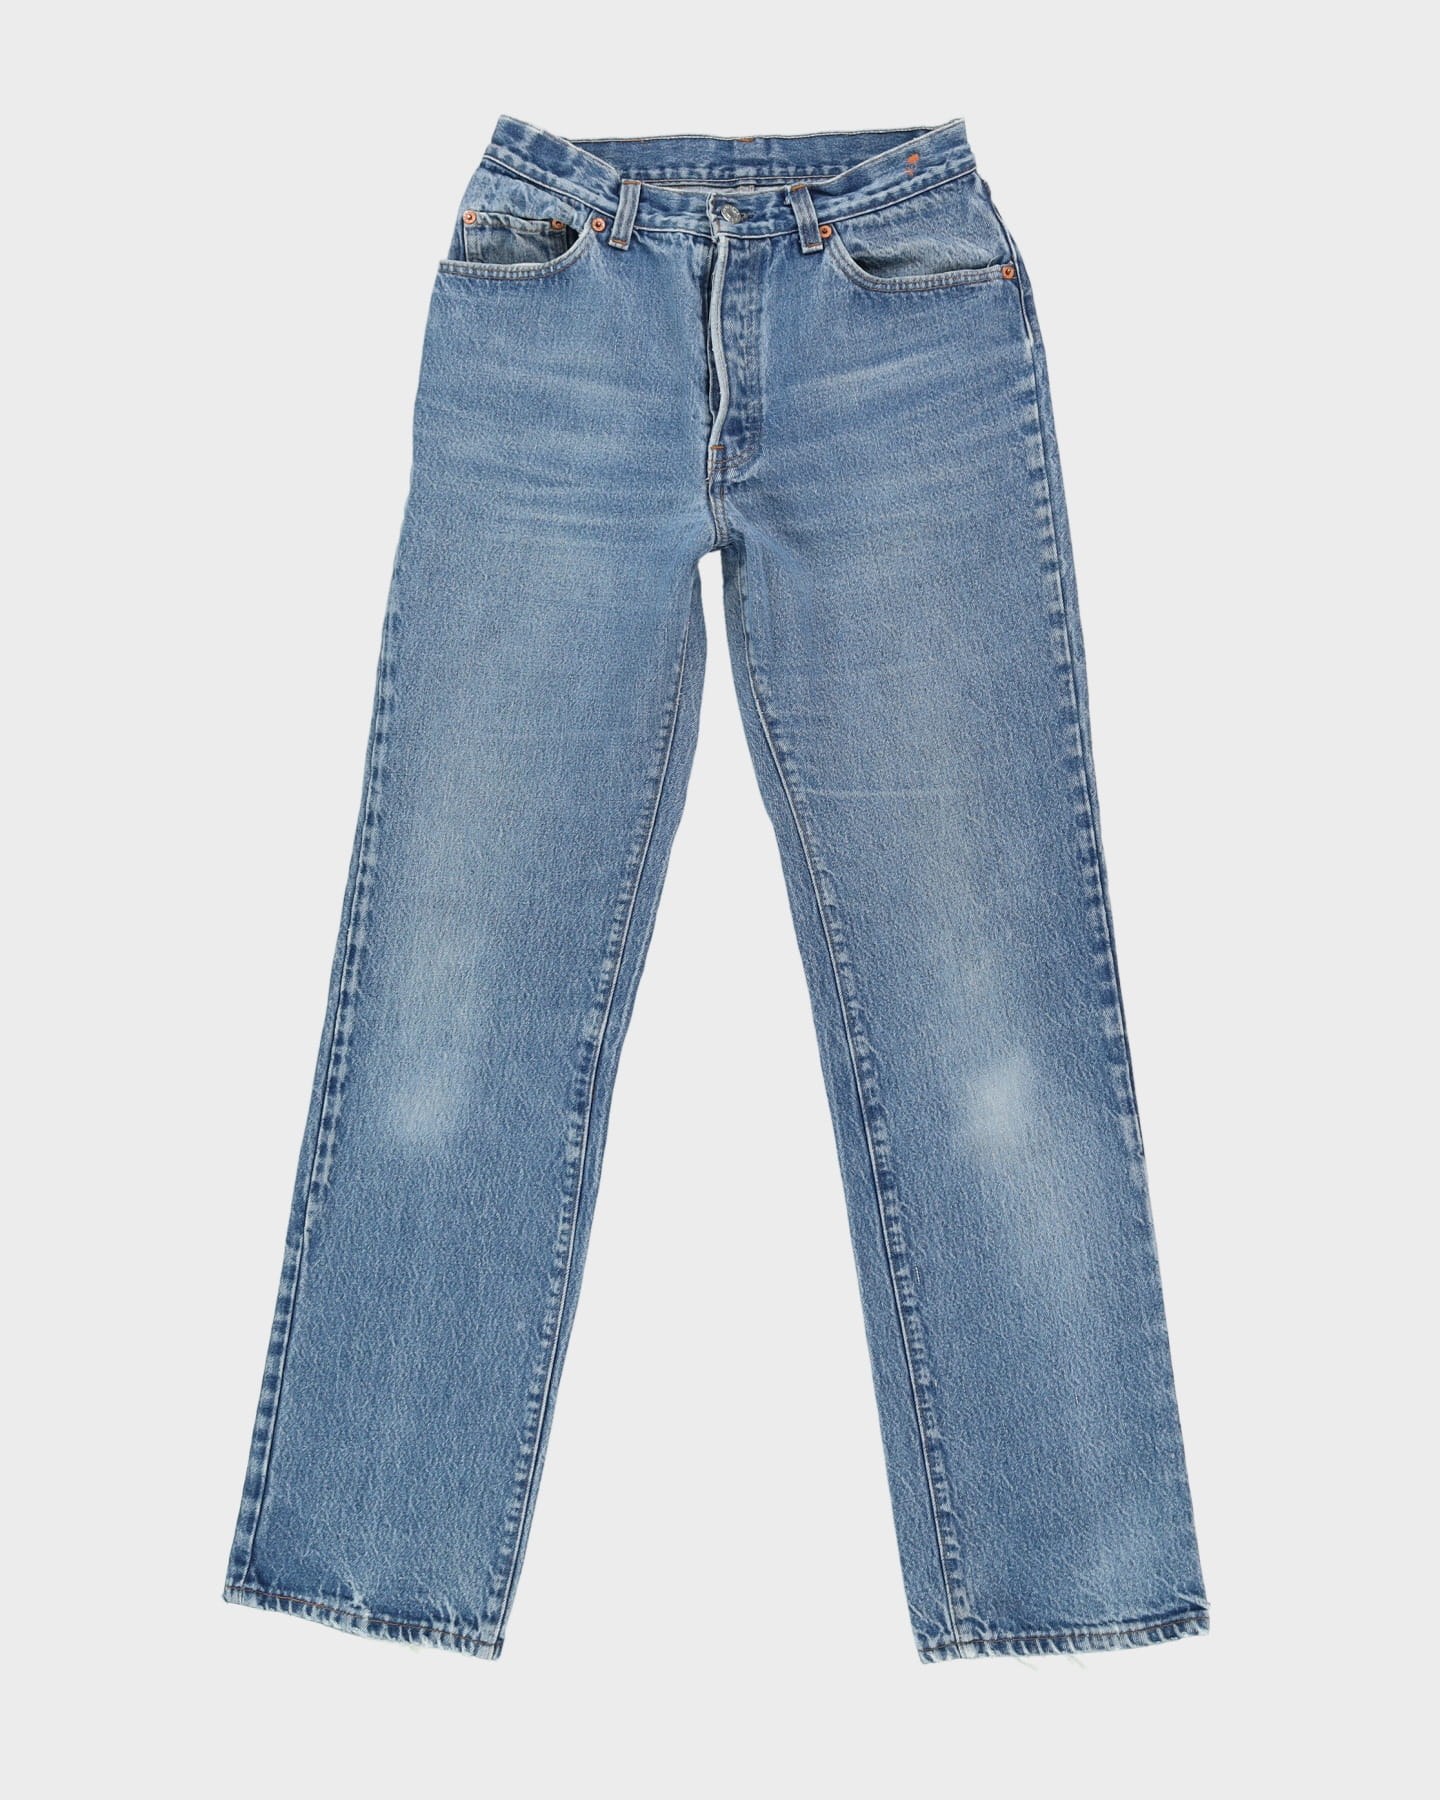 90s Levi's 501 Blue Jeans - W30 L33